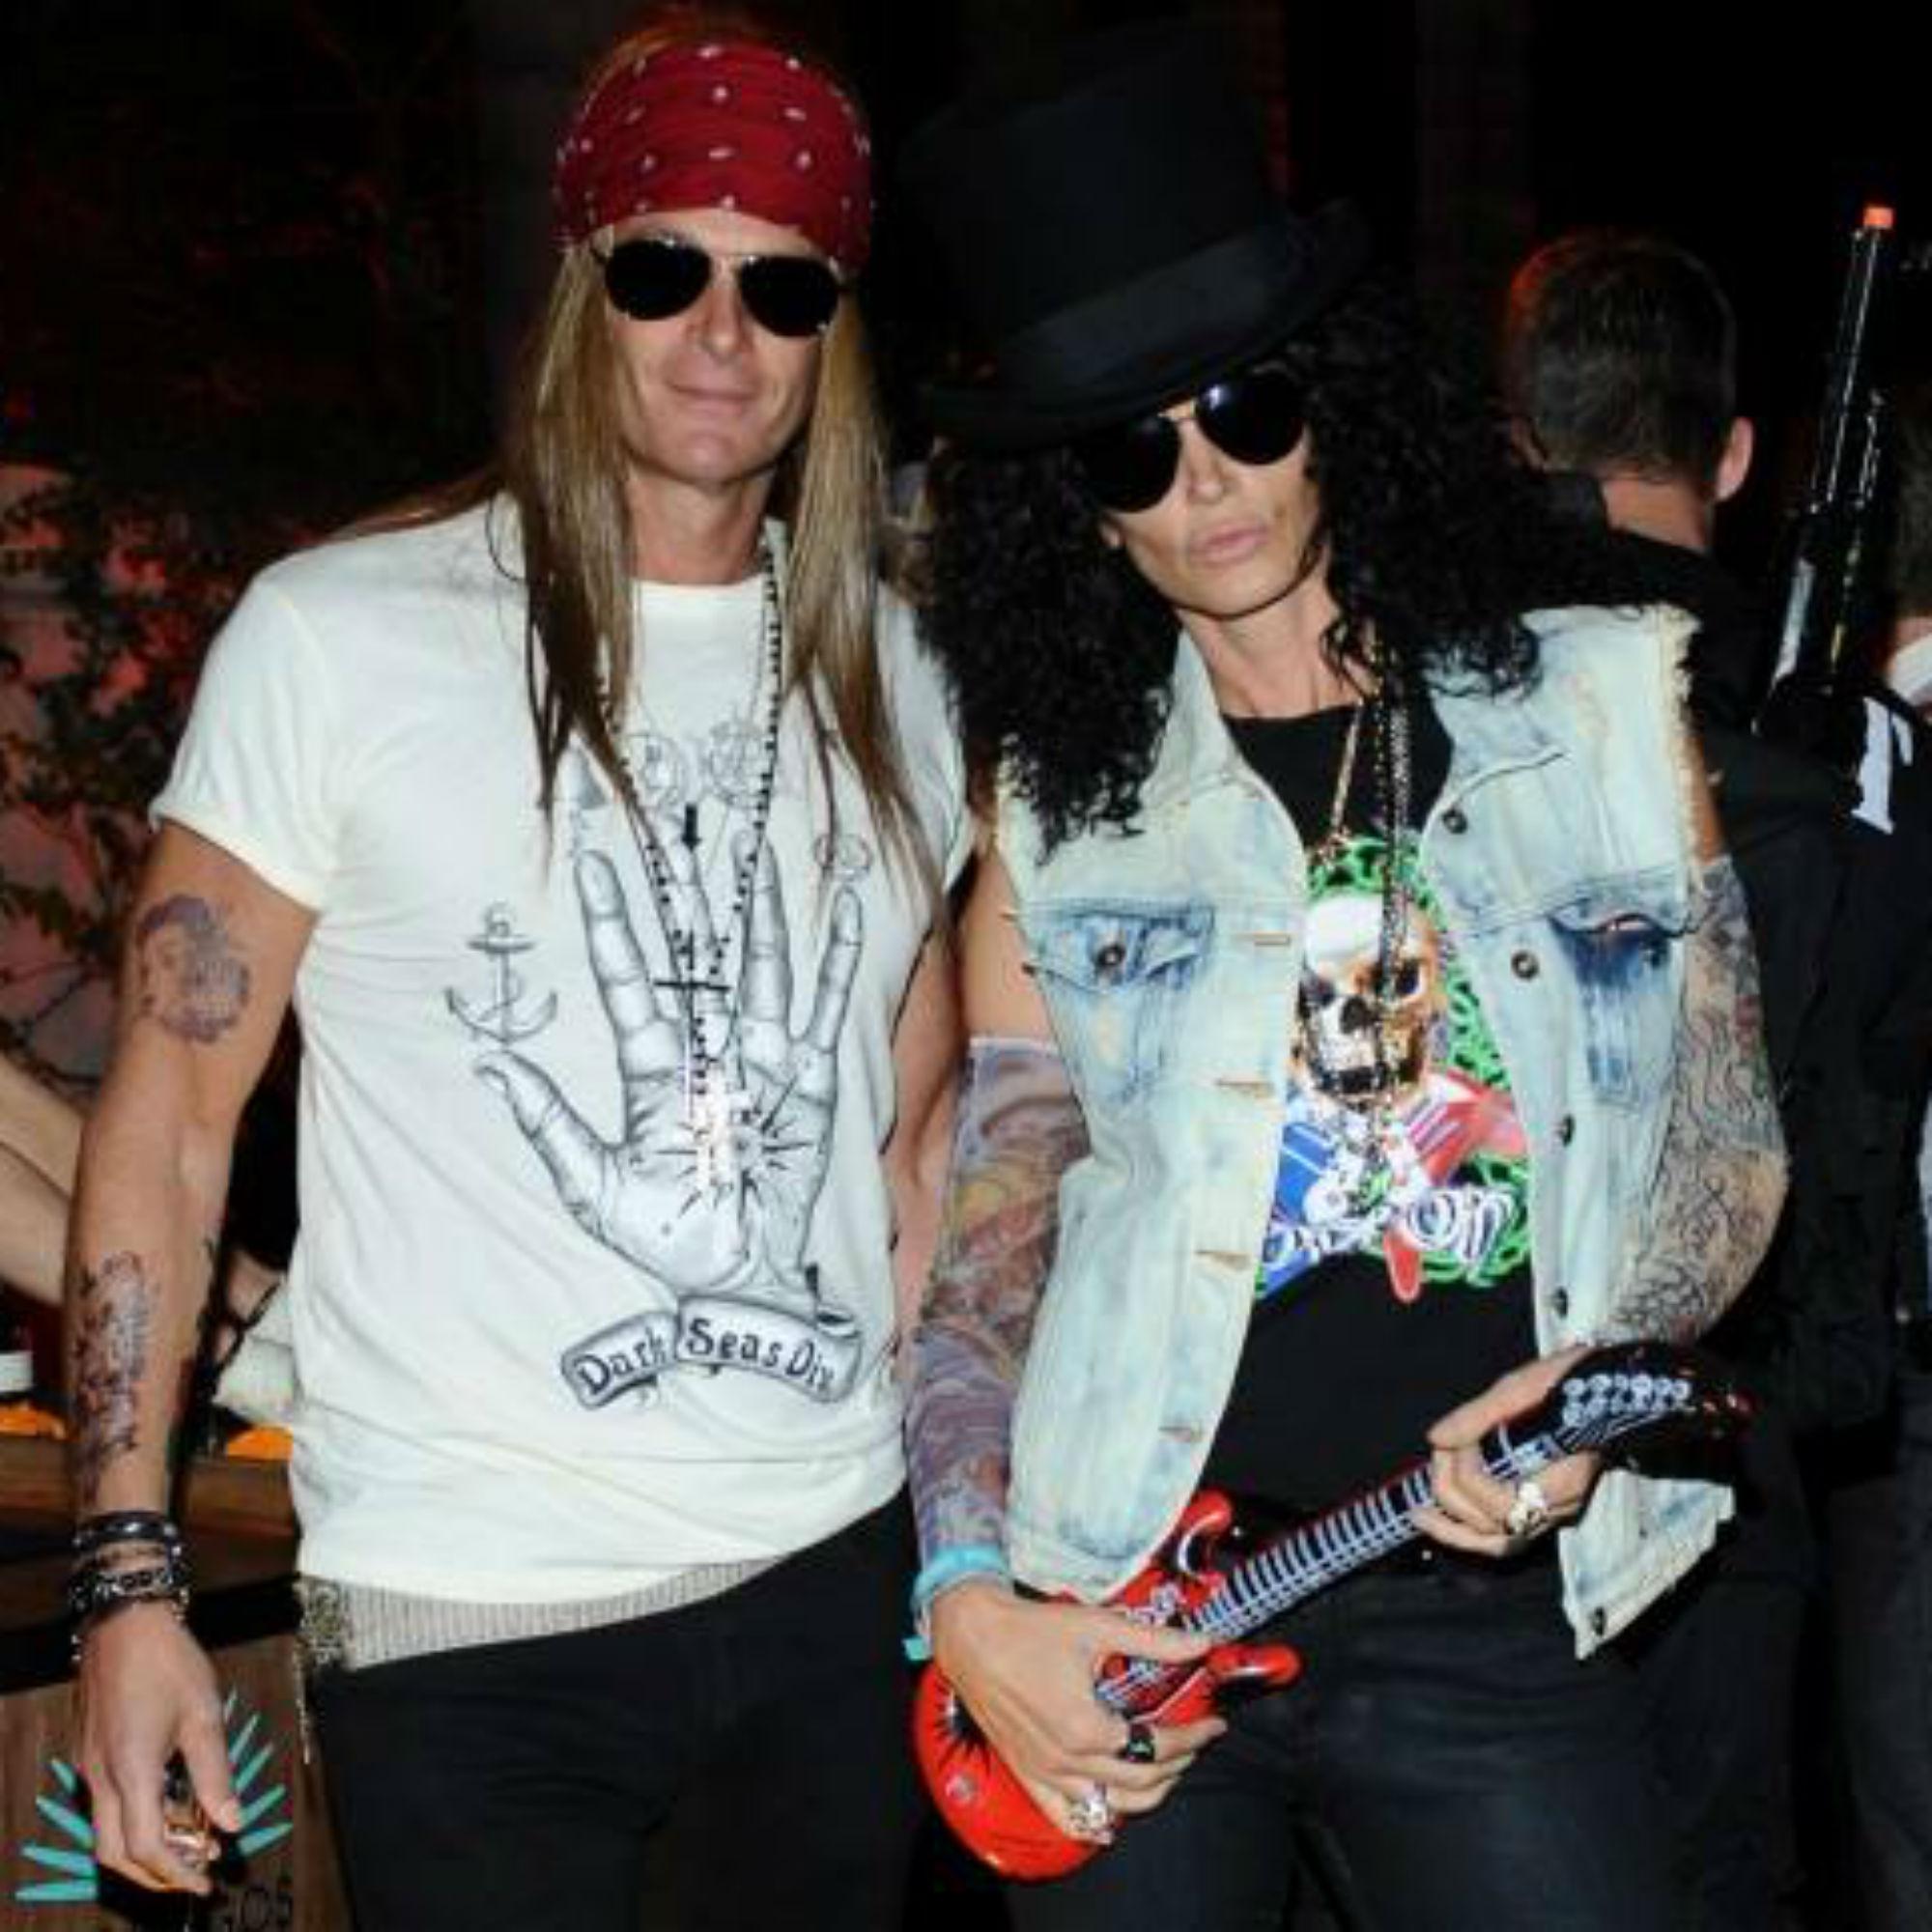 La supermodella Cindy Crawford (a destra) assieme al marito Rande Gerber vestiti rispettivamente dalle rockstar Slash e Axl Rose dei Guns N'Roses (foto dal profilo Facebook di Cindy Crawford)